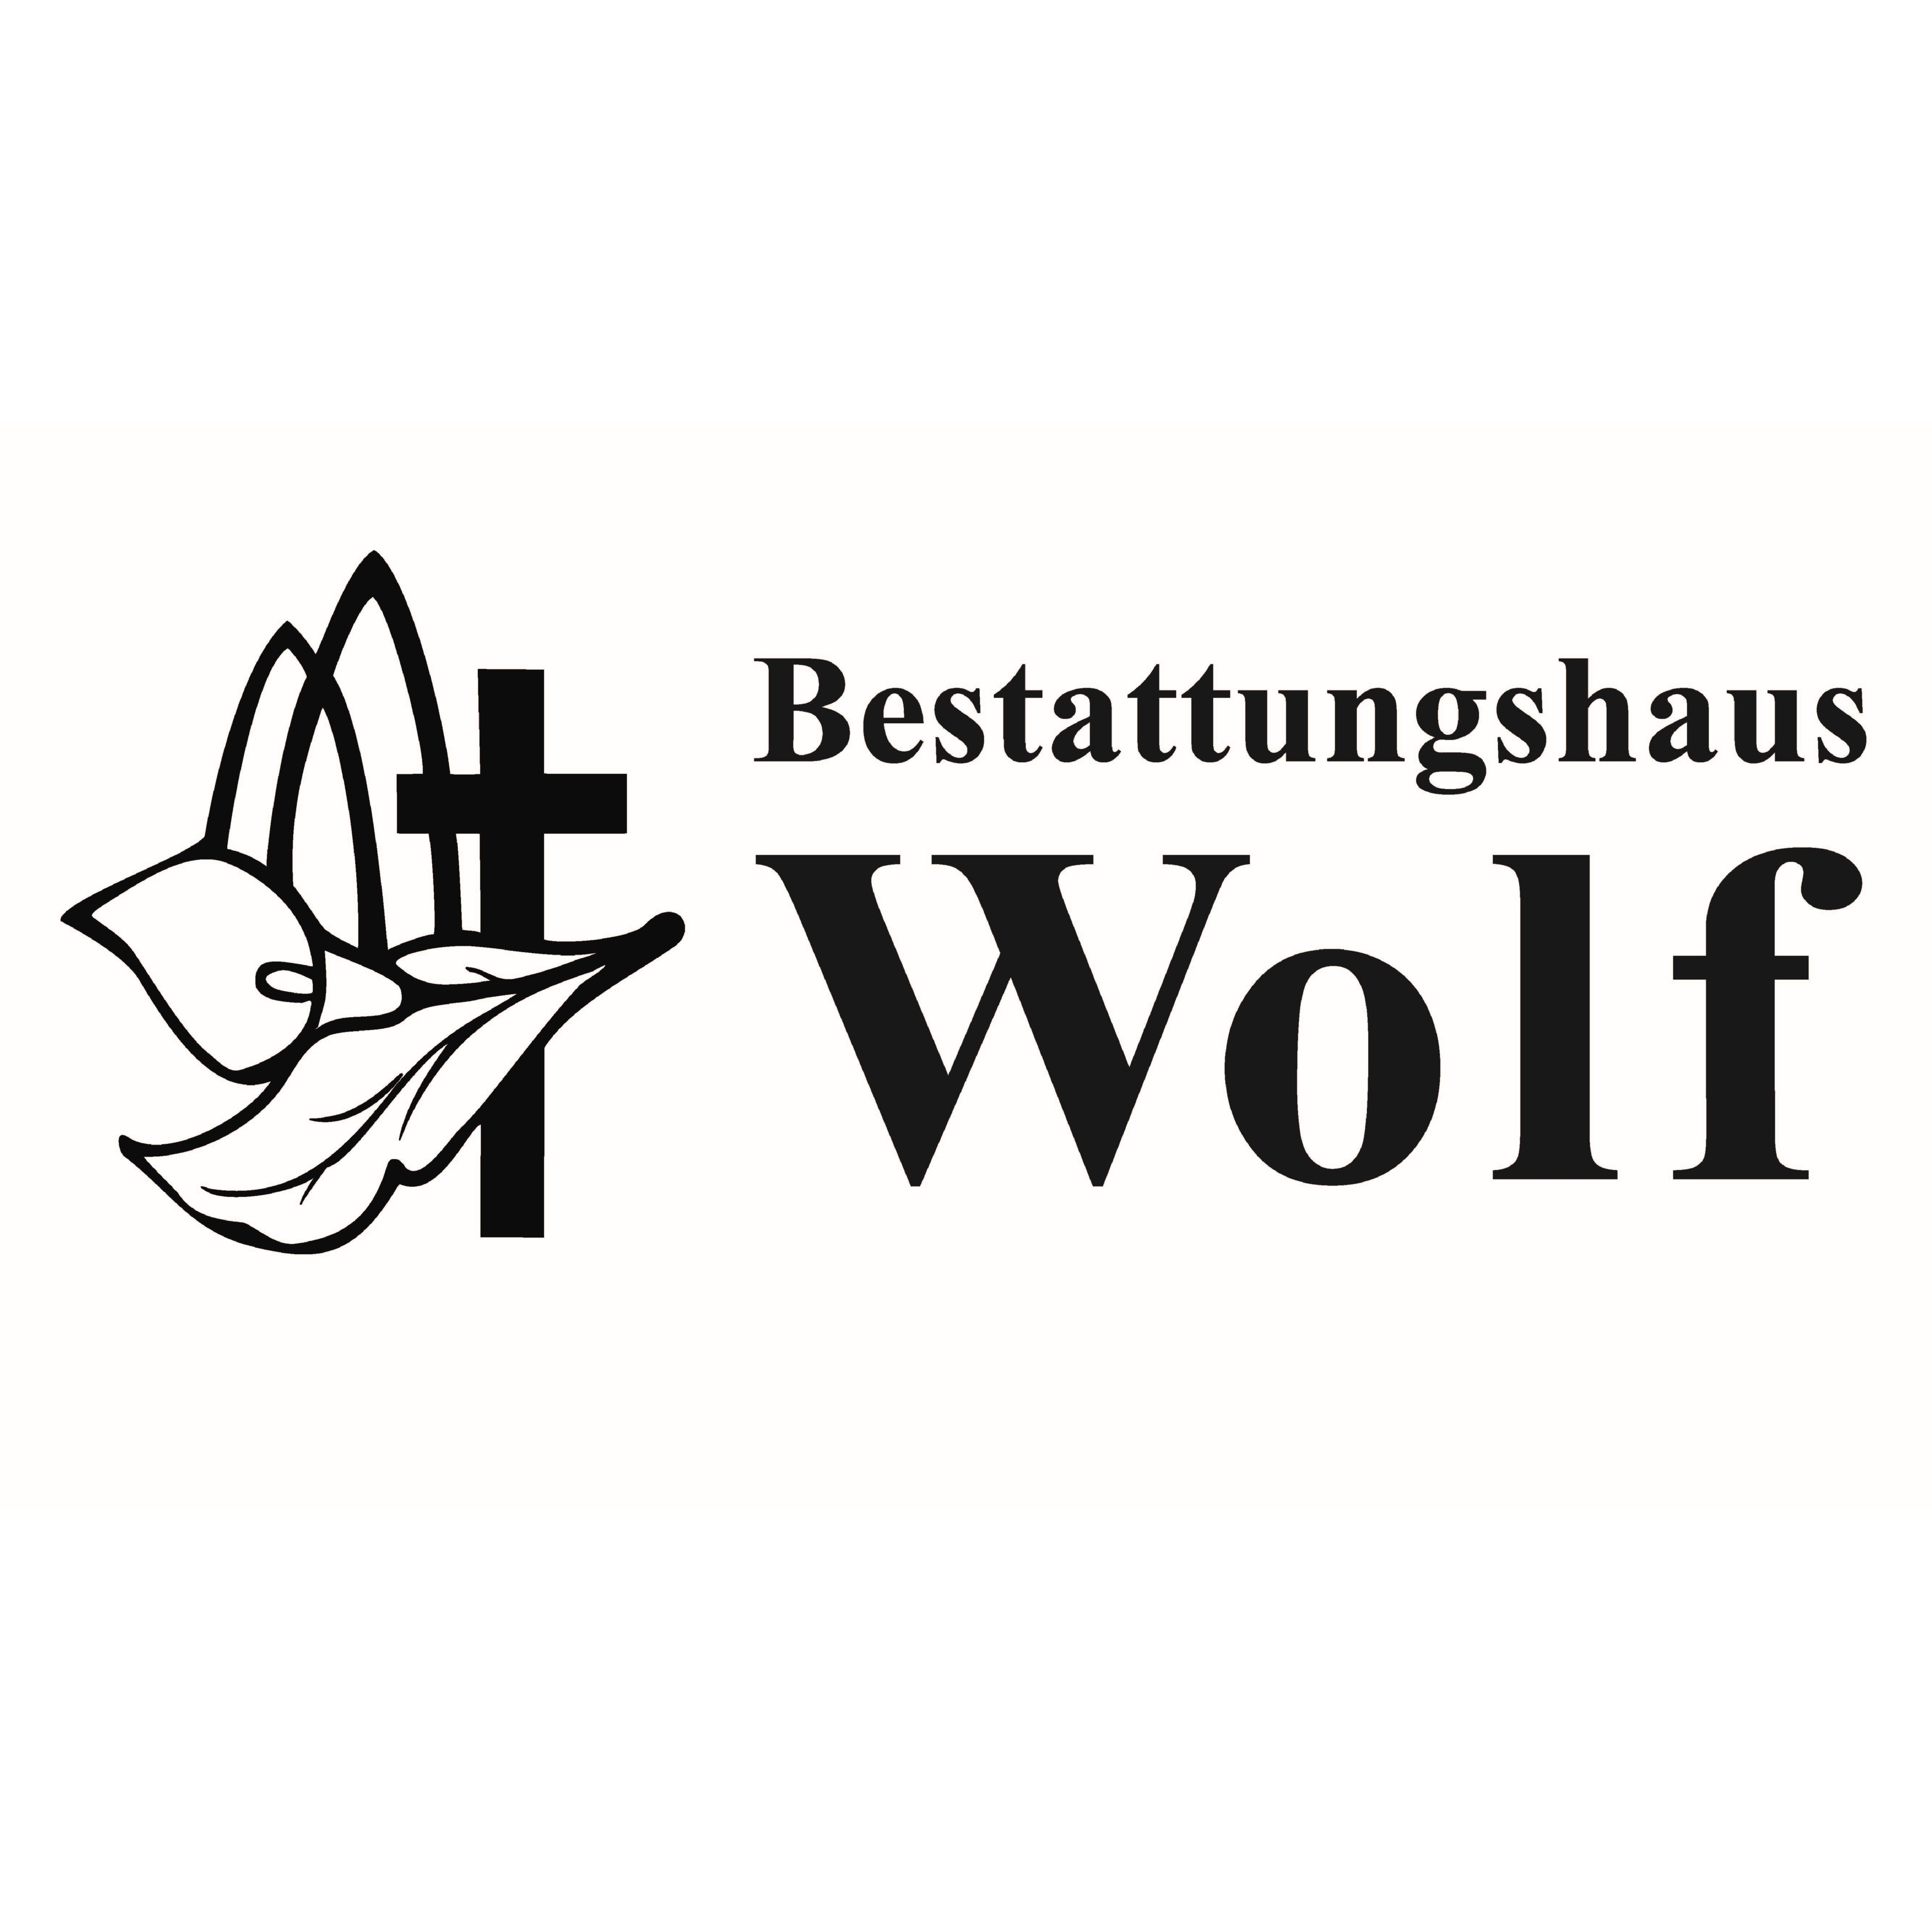 Bestattungshaus Wolf in Gotha in Thüringen - Logo